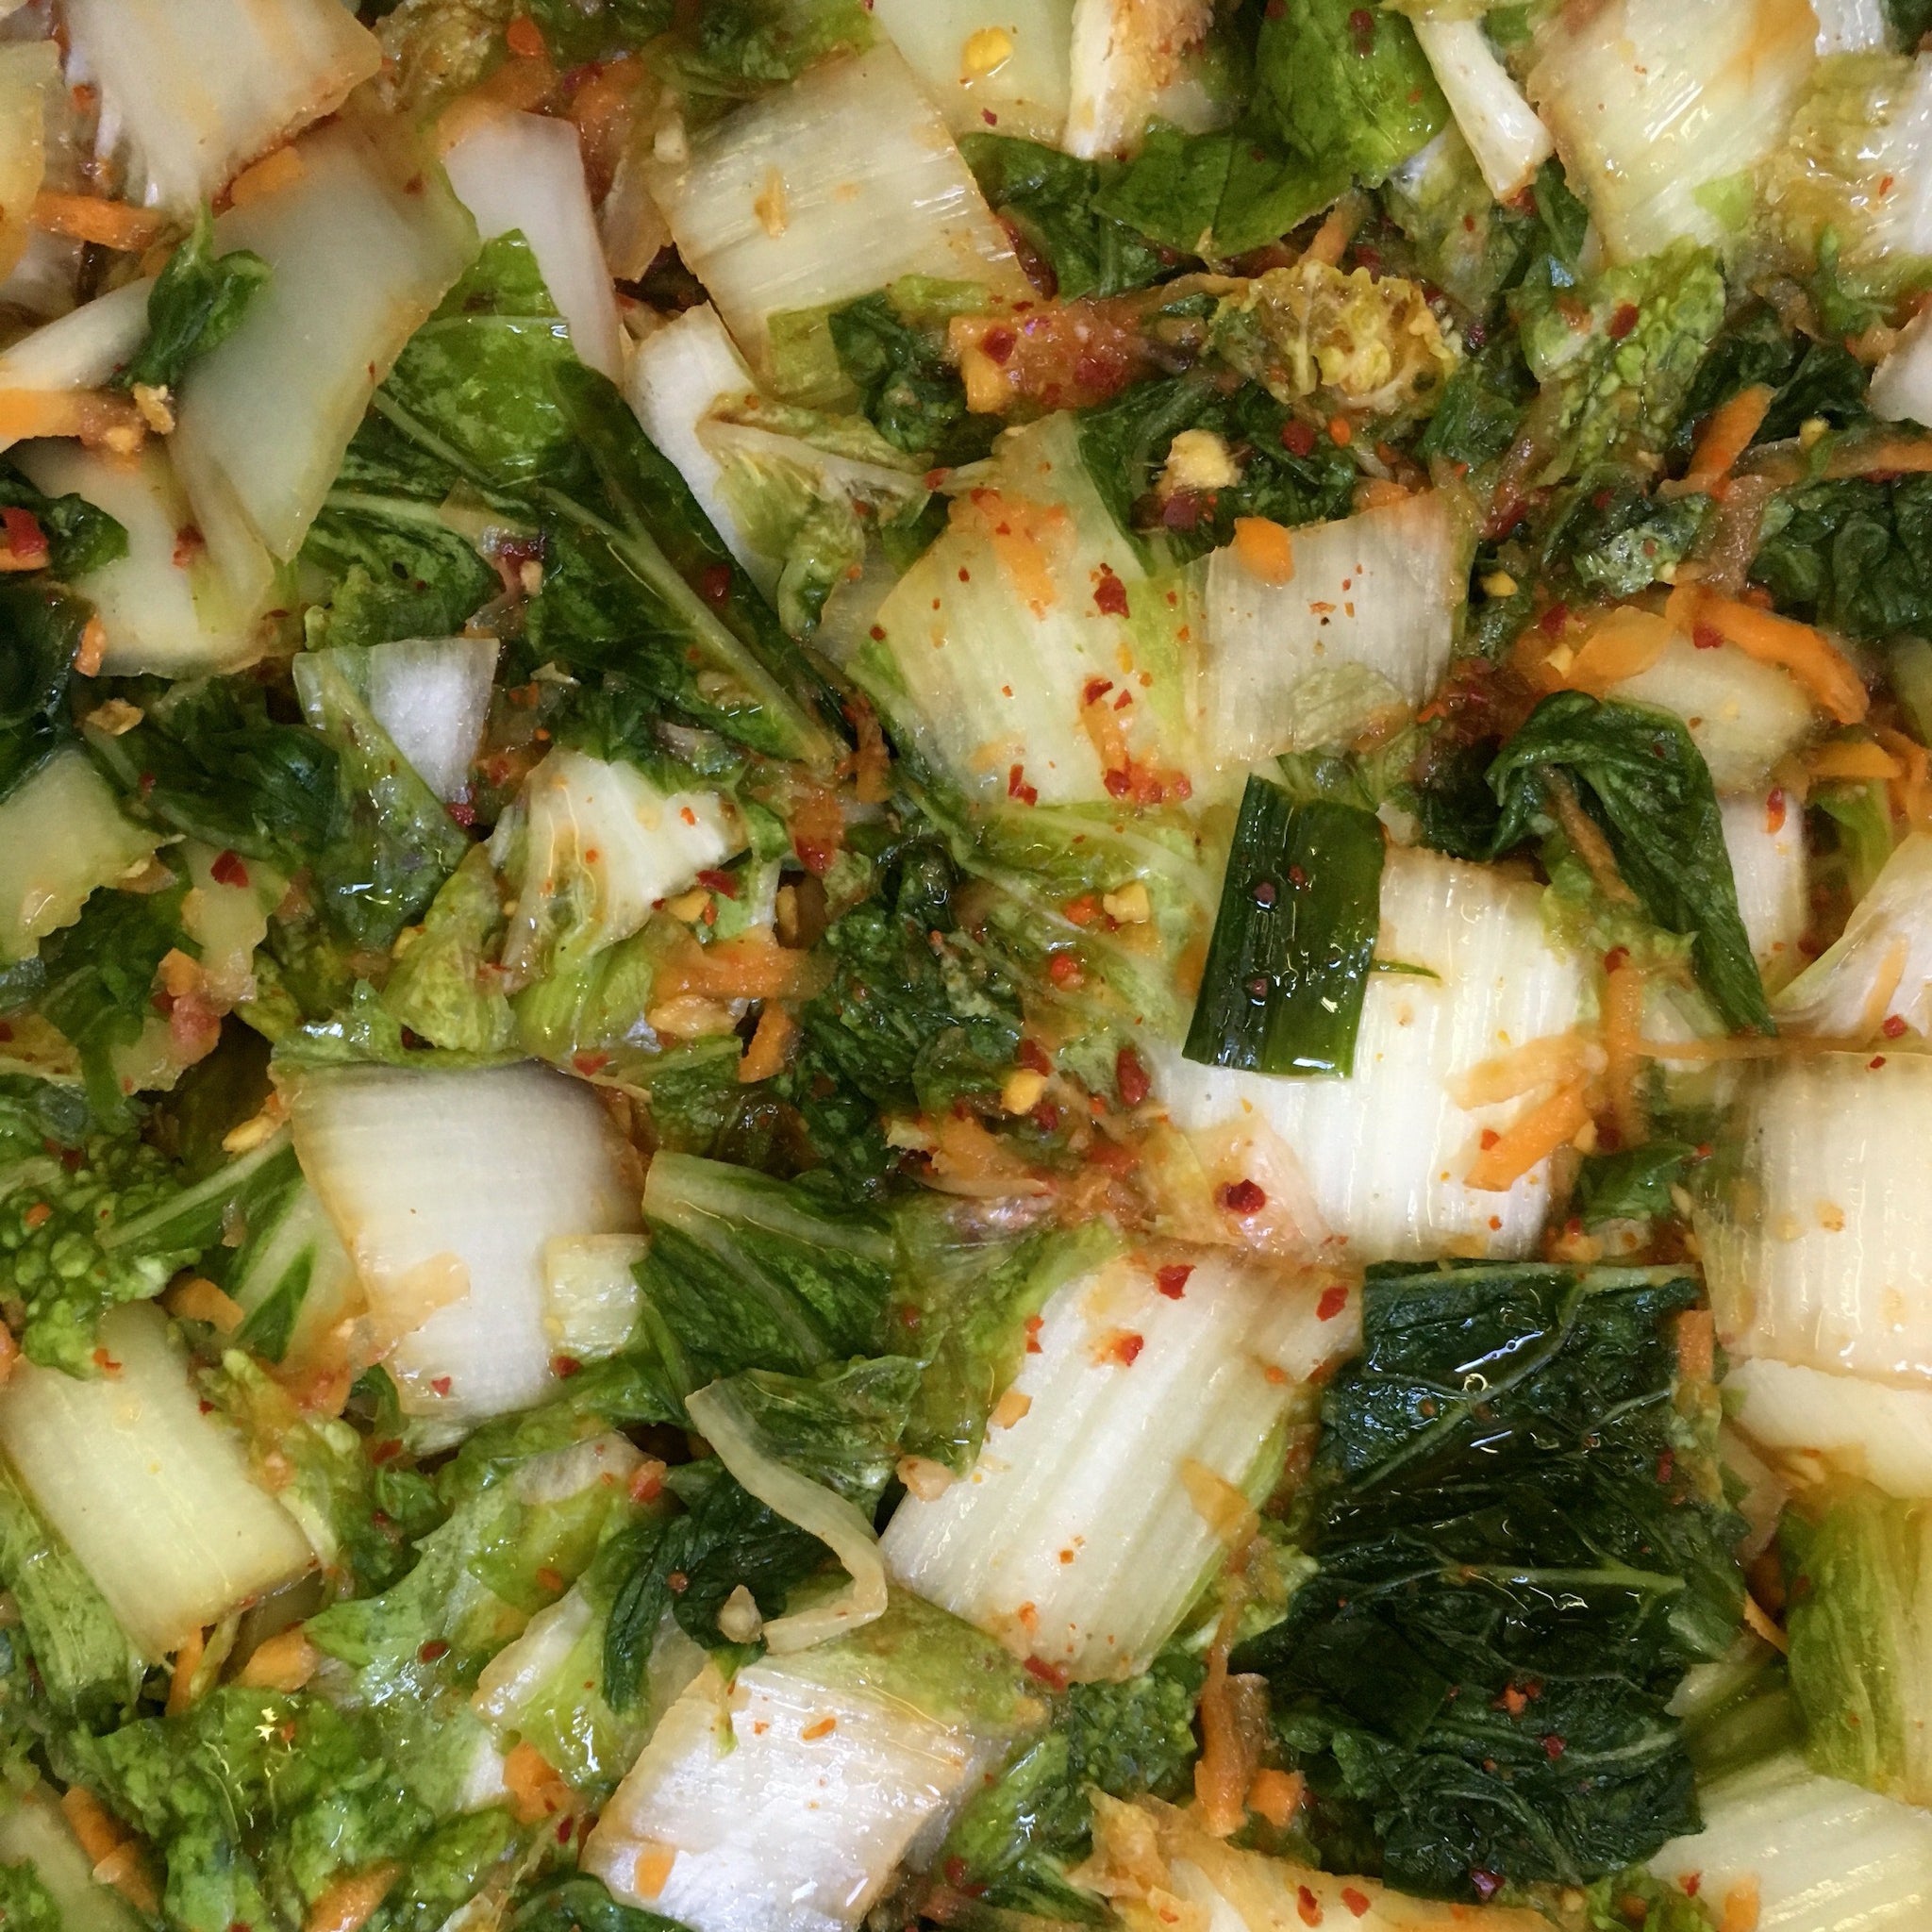 Vegan Kimchi Ingredients